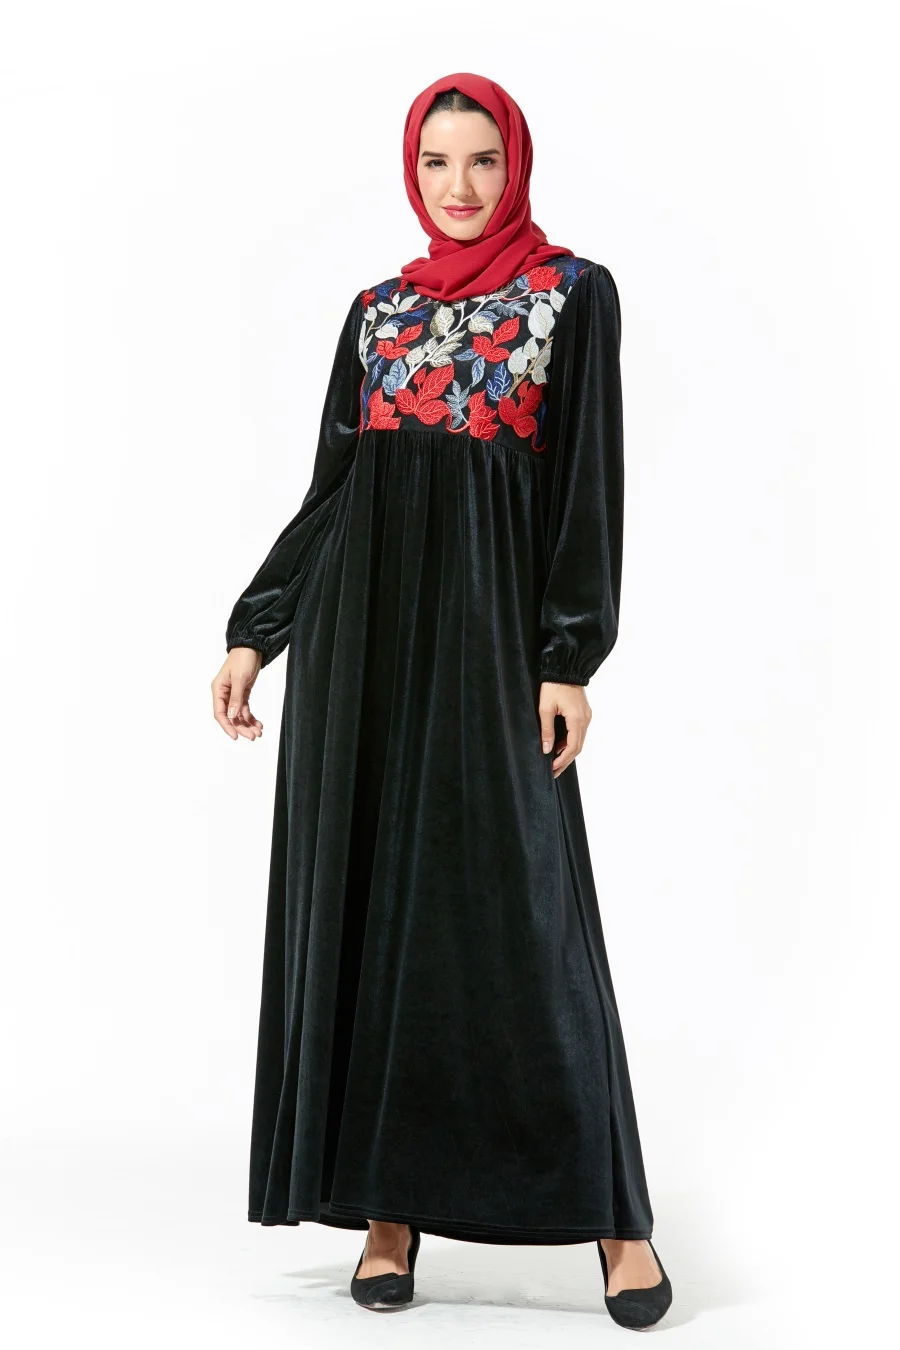 Siskakia вельветовое длинное платье, повседневное, этническое, Цветочная вышивка, макси платья с длинным рукавом, зима, Свинг, аравийская одежда, 26 цветов